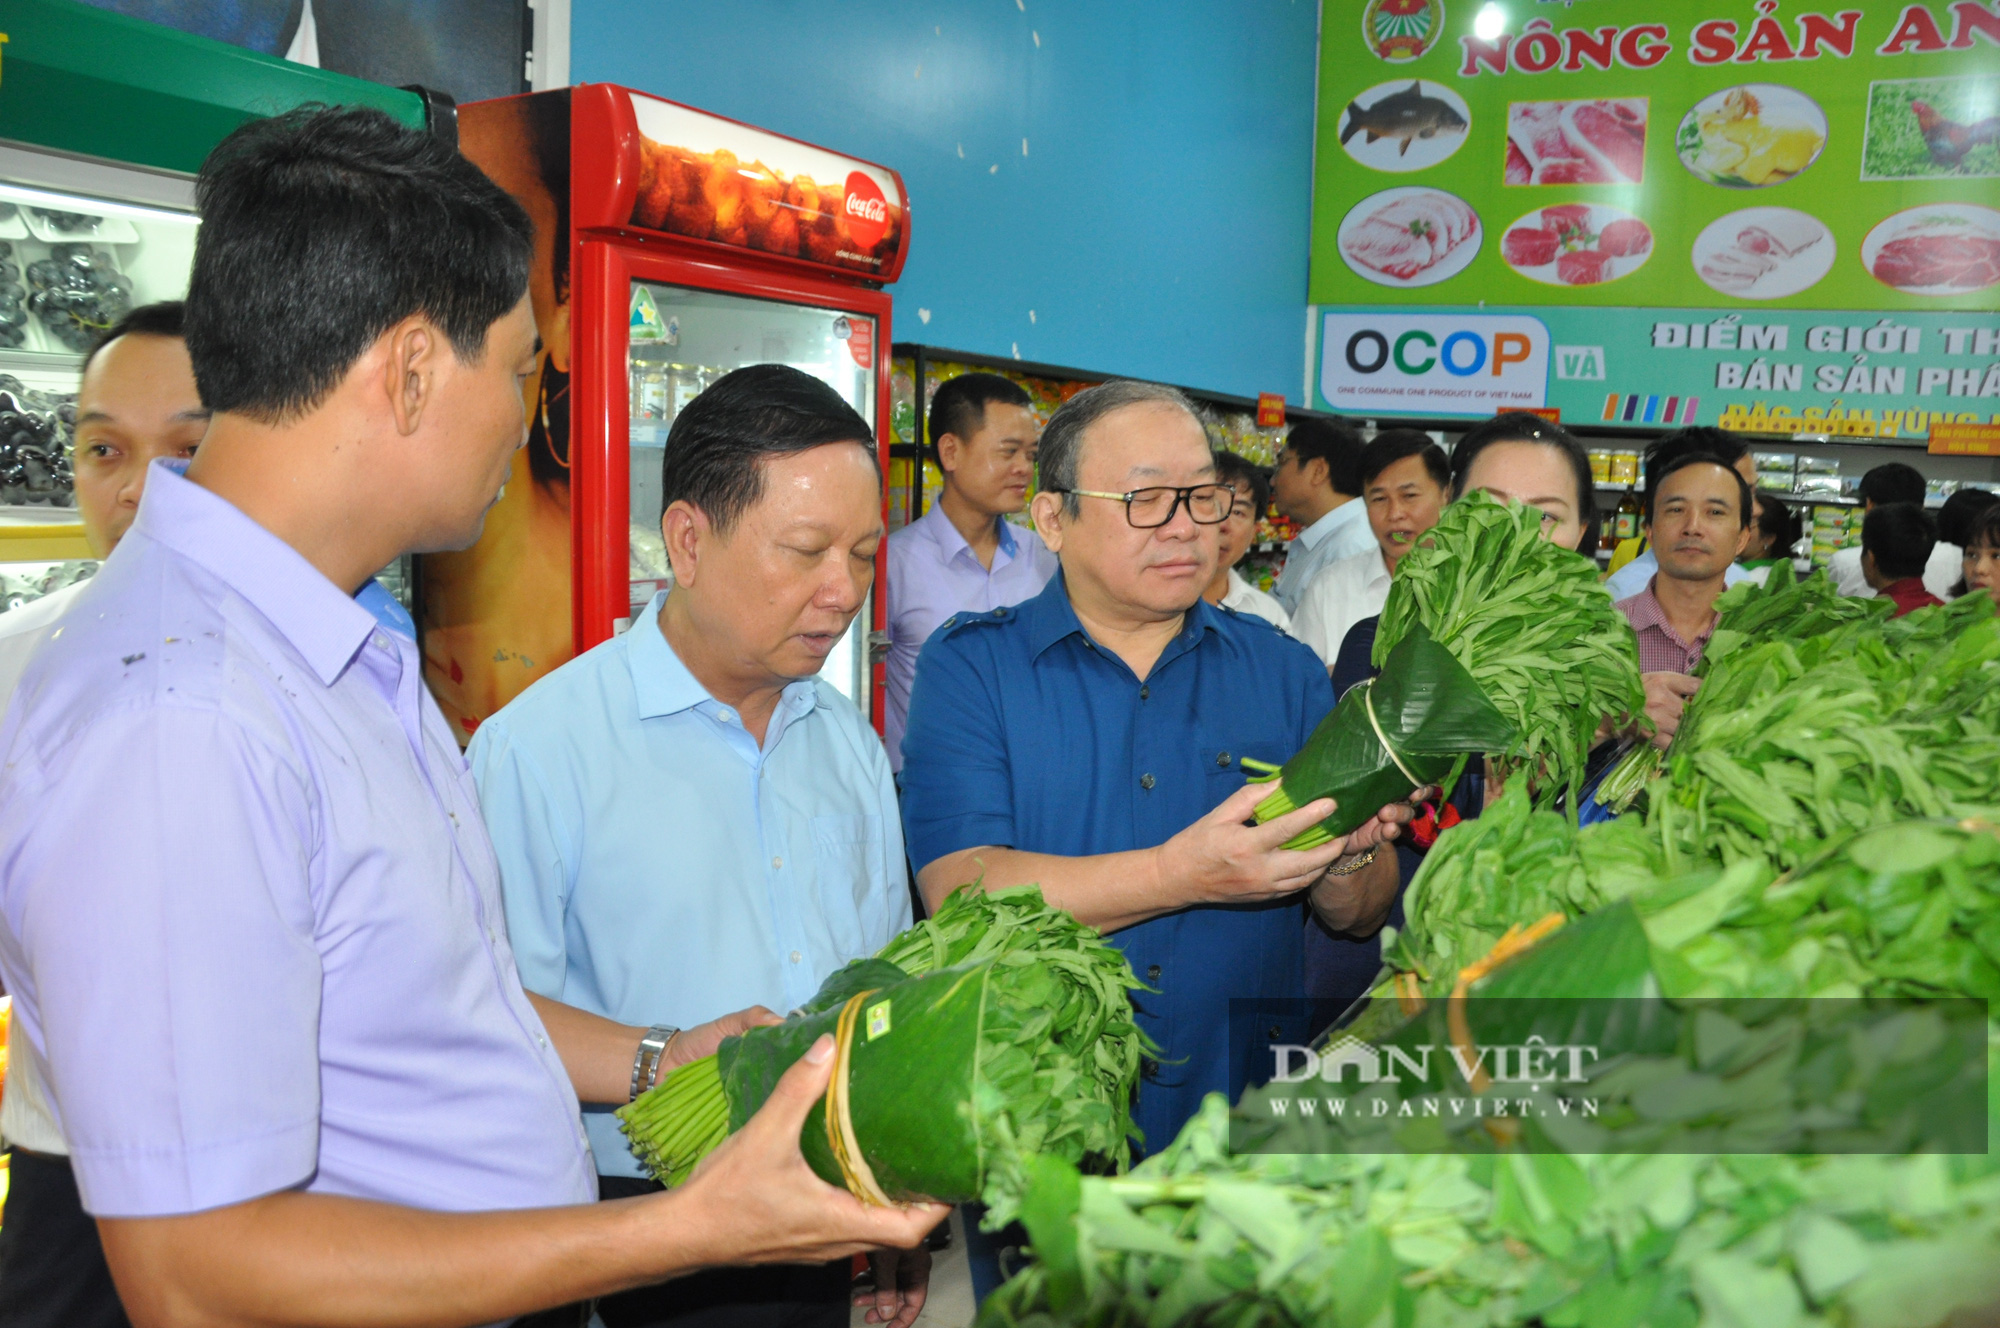 CLIP: Chủ tịch Hội Nông dân Việt Nam ấn tượng với đặc sản tại cửa hàng nông sản đặc sản đầu tiên ở Hòa Bình - Ảnh 3.